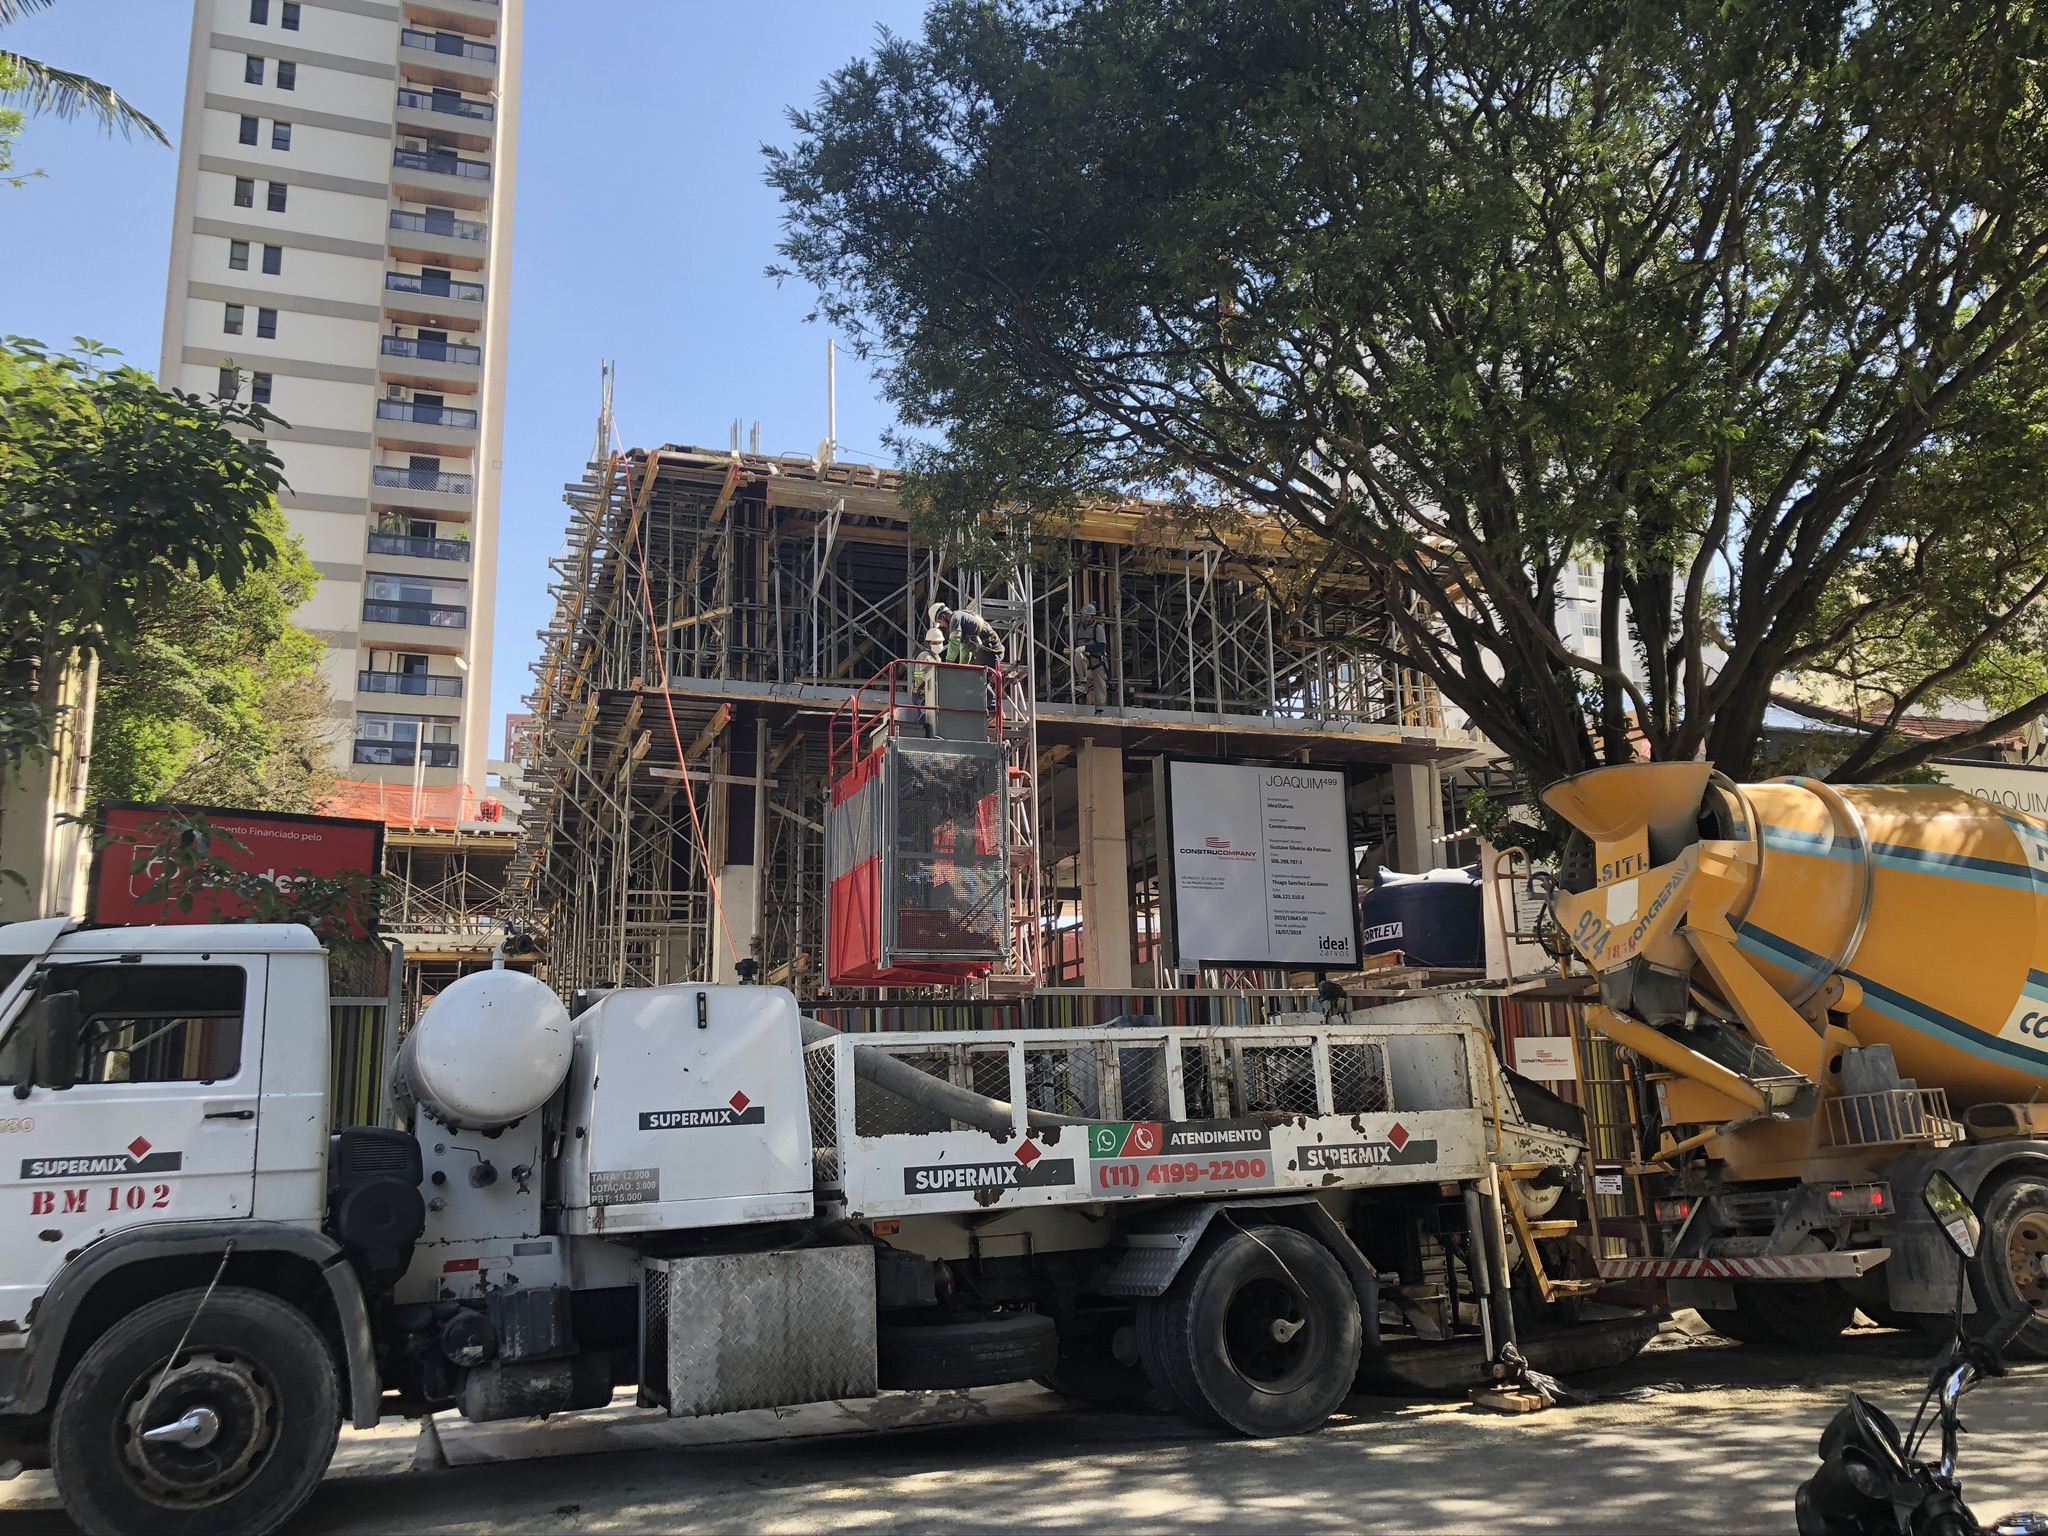 Indústria da construção: São Paulo permanece com os maiores índices enquando o Rio de Janeiro apresenta queda. Foto: Construção de prédio no bairro de Pinheiros, São Paulo.